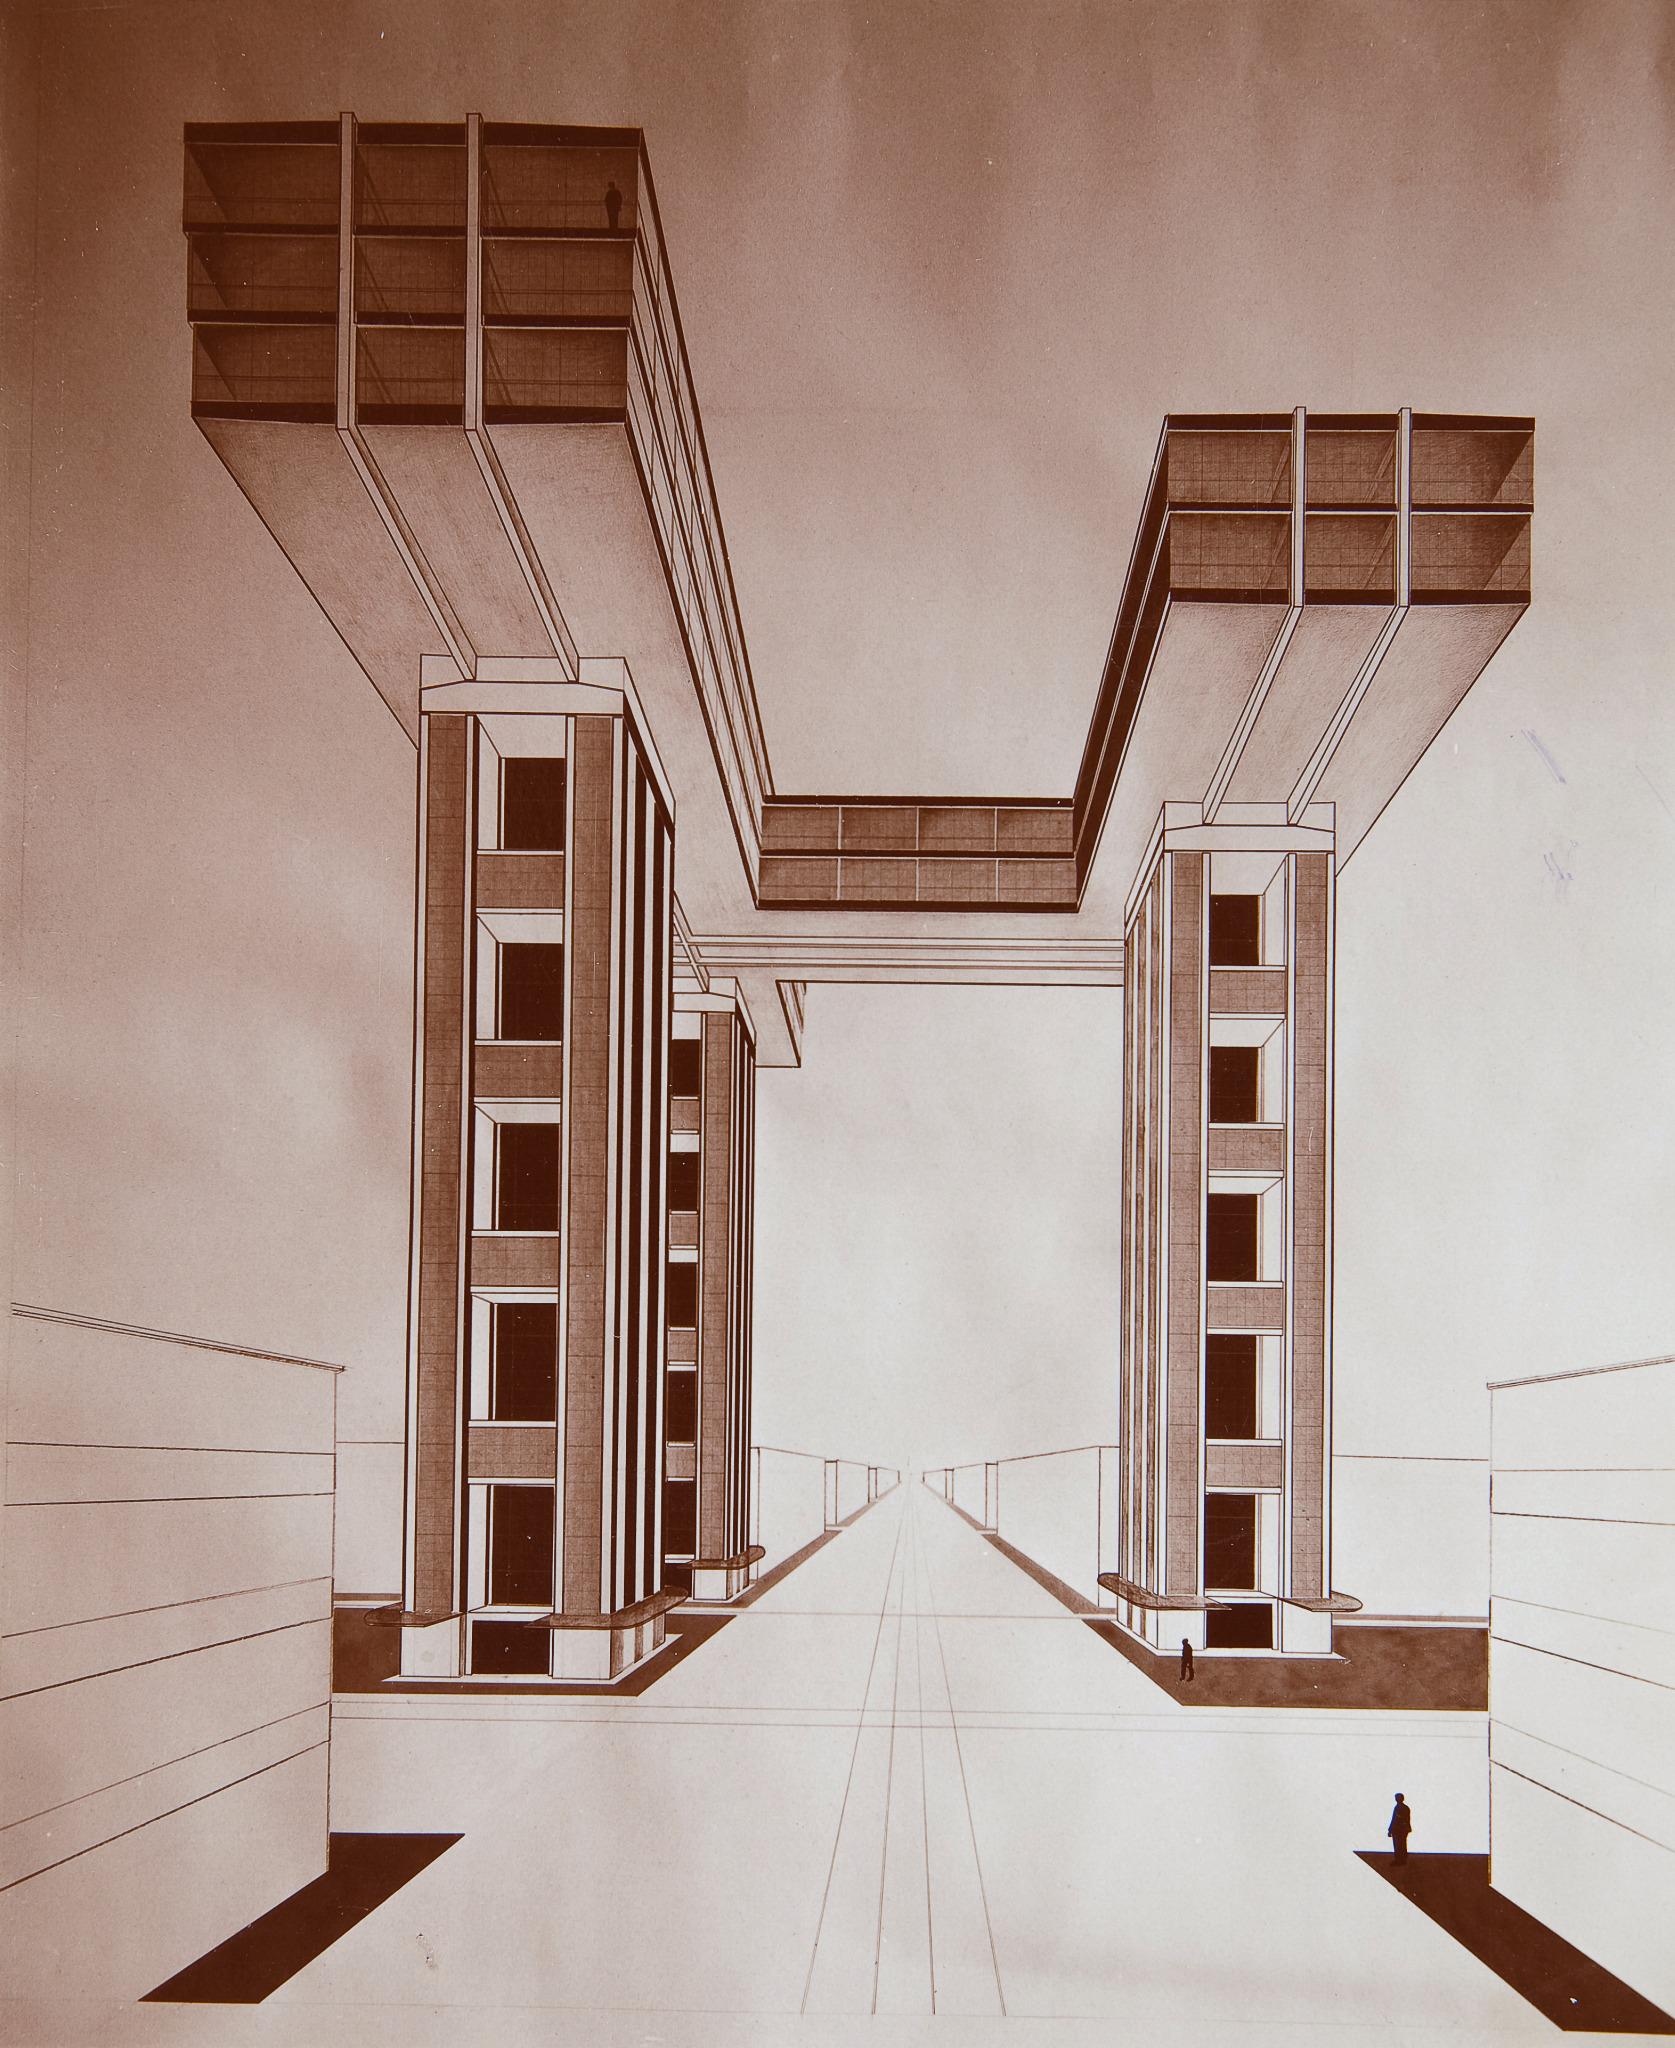 Эль Лисицкий, проект горизонтального небоскреба на площади у Никитских ворот в Москве,&nbsp;1924-25